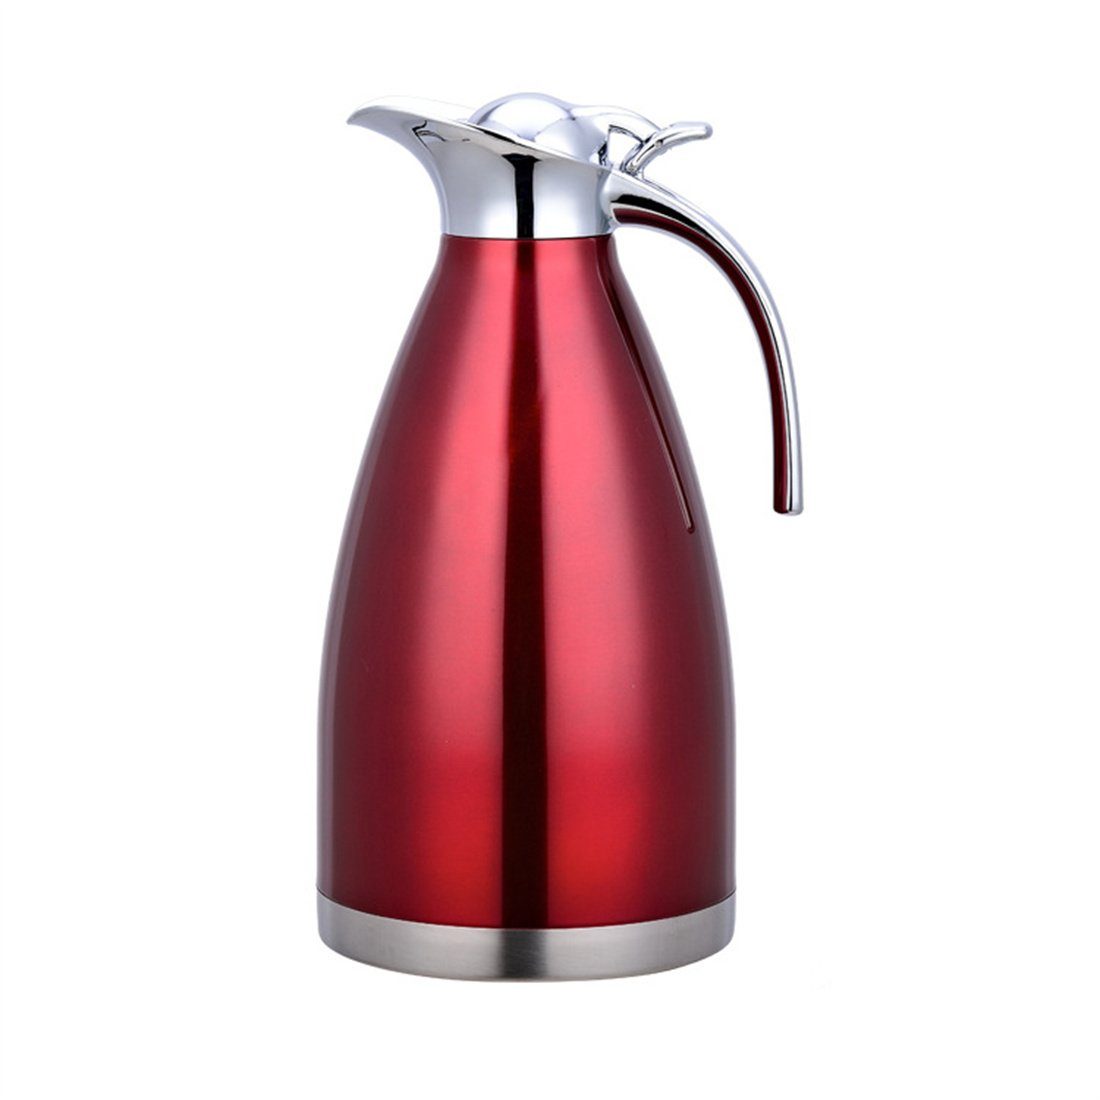 Heißwasserkocher, 2.0L DÖRÖY Rot Edelstahl-Wasserkocher, Isolierter Kaffeekanne Isolierkanne